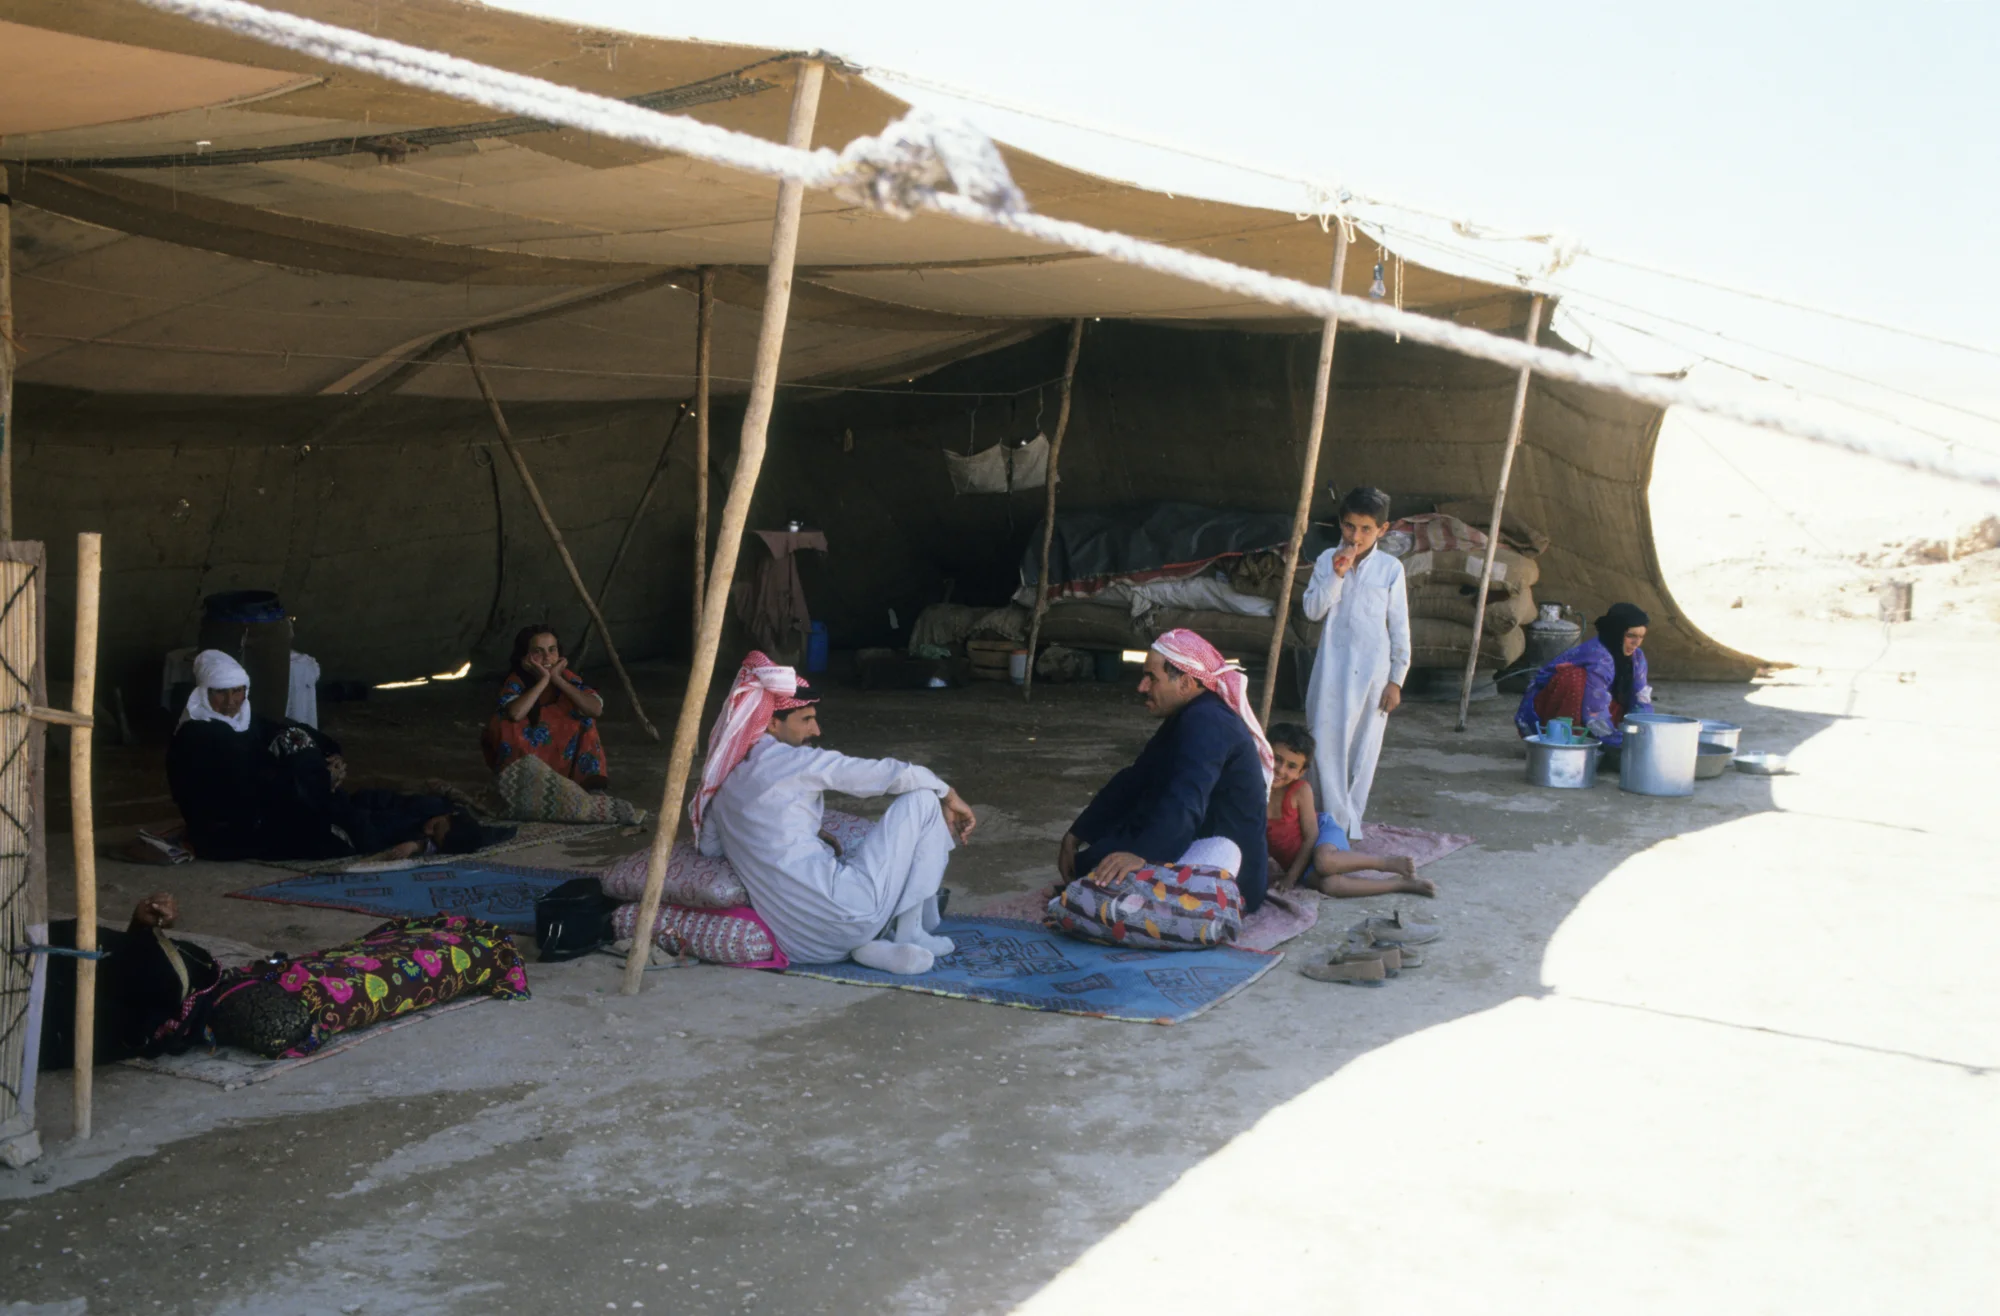 في مقصورة المعيشة لخيمة عائلة من البدو شبه الرحل في منطقة مسكنة